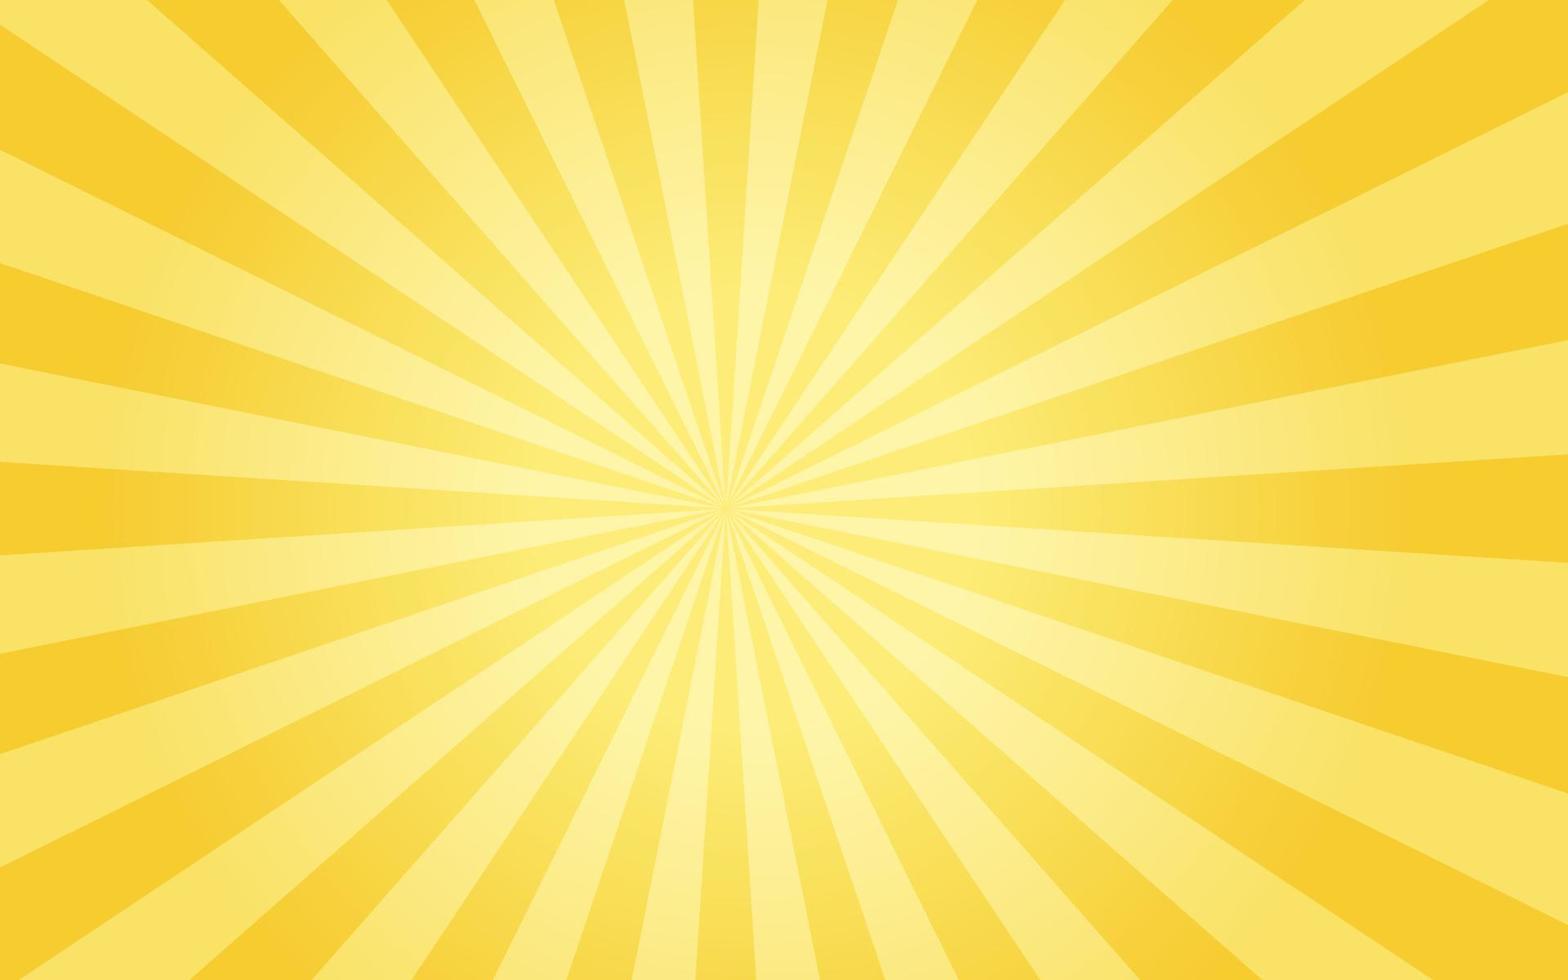 raggi di sole in stile vintage retrò su sfondo giallo, motivo a raggiera di fondo. illustrazione vettoriale estate